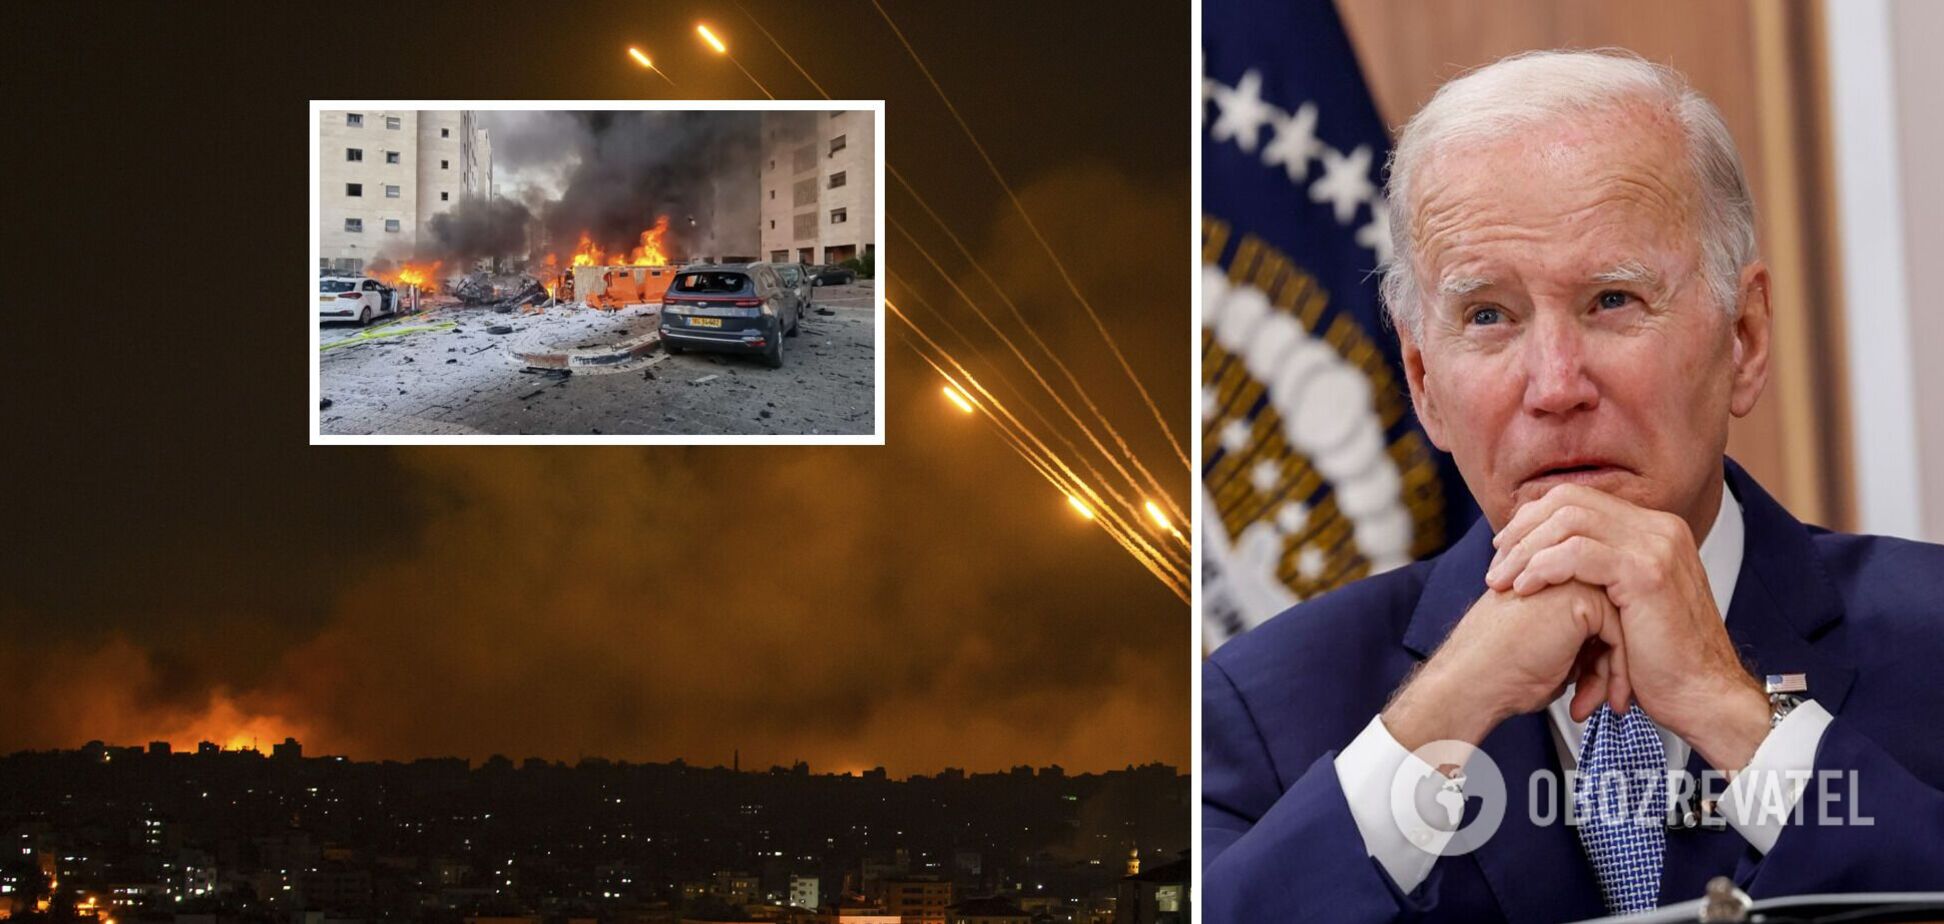 'Це був акт чистого зла': Байден заявив, що напад ХАМАС на Ізраїль викликав спогади про геноцид євреїв